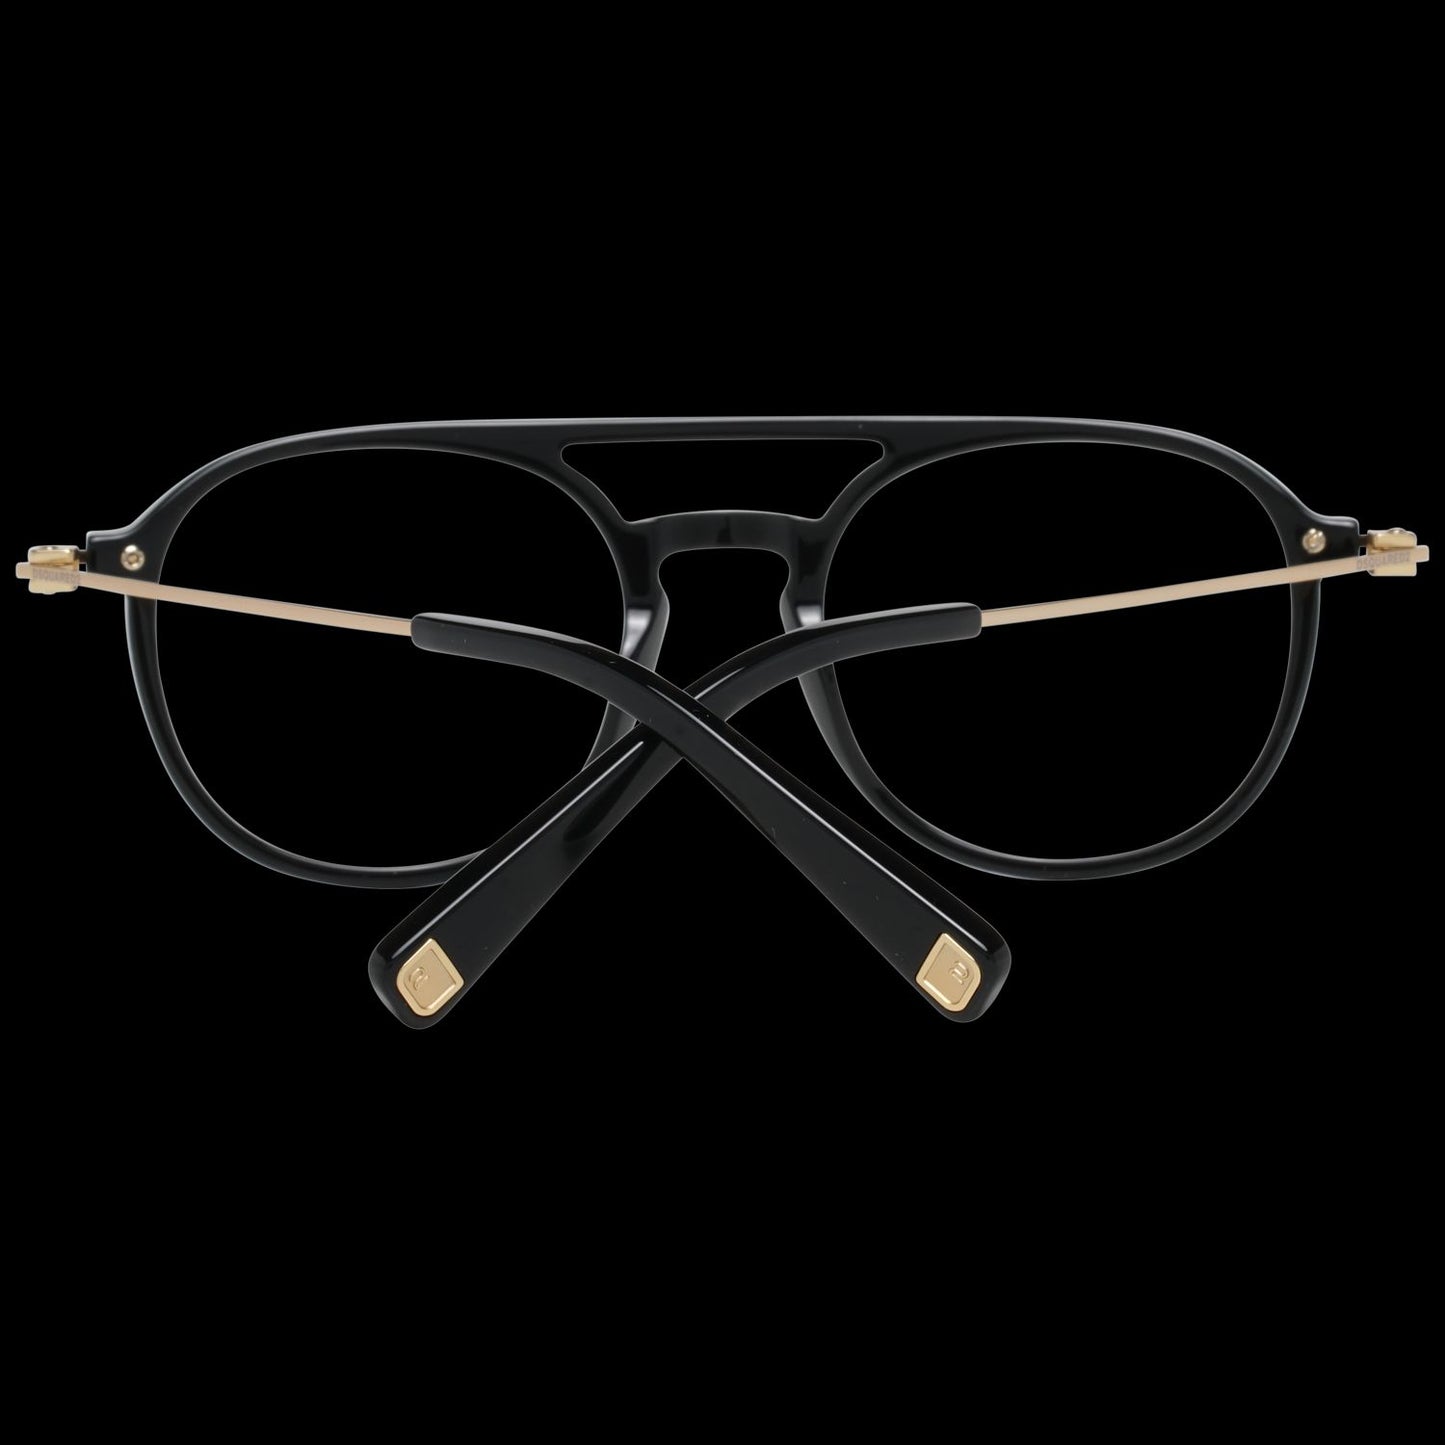 Sleek Black Full-Rim Designer Eyewear